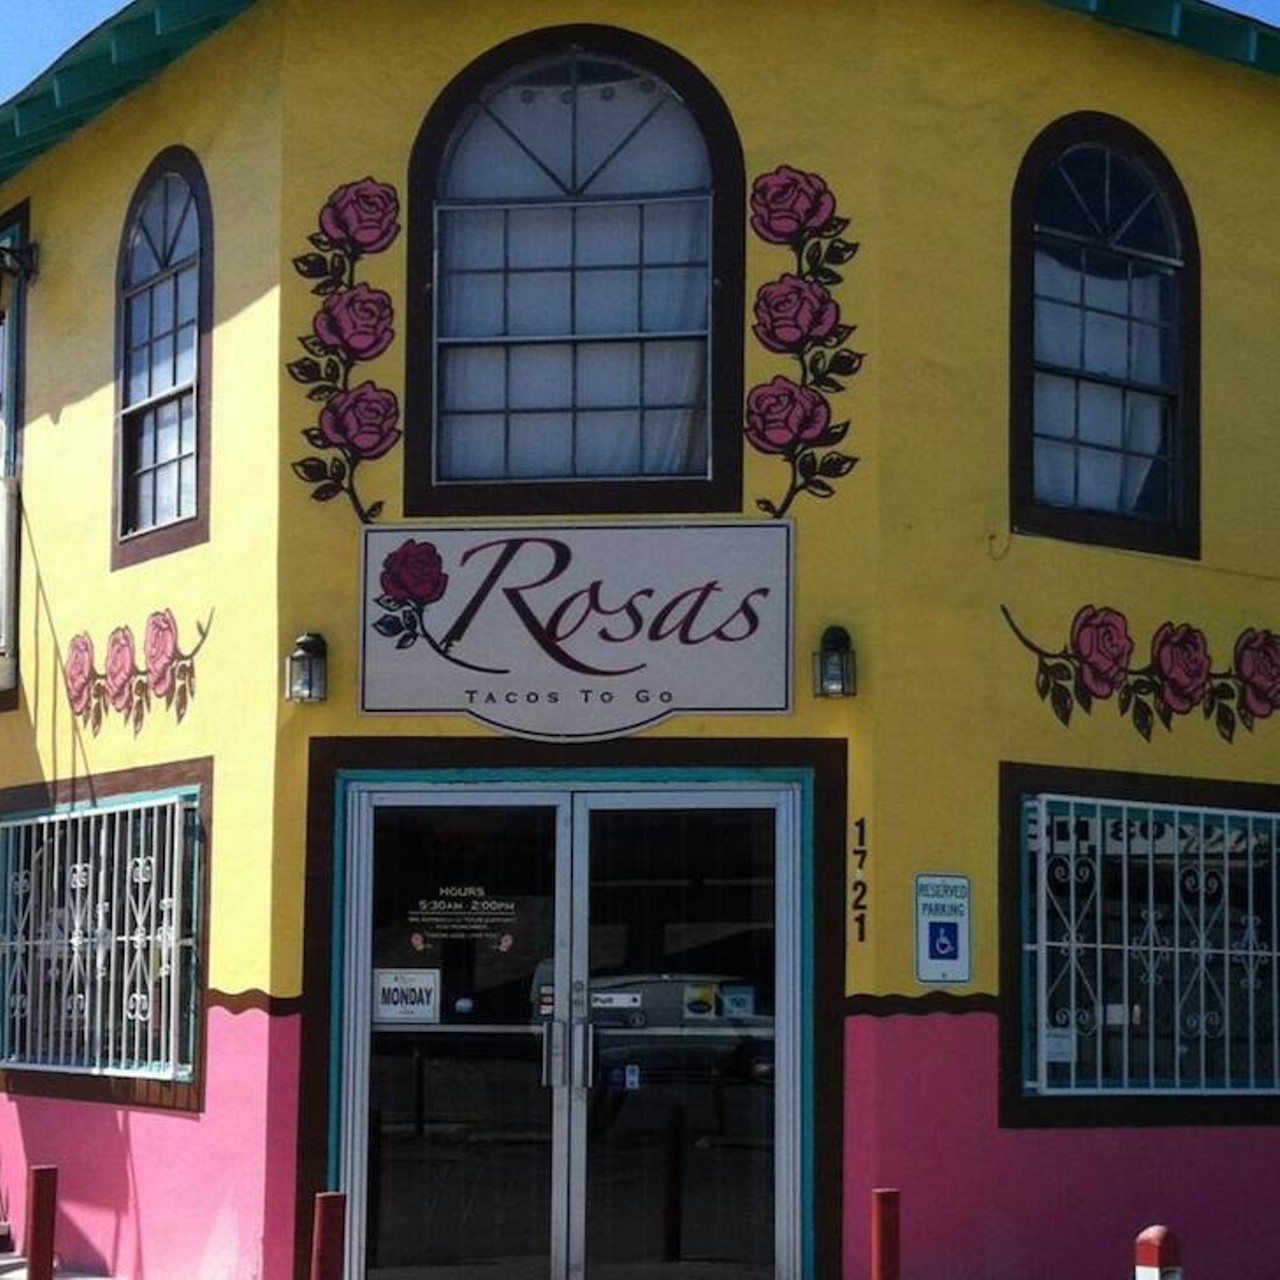  Rosa's Tacos To Go 
1721 Nogalitos St., (210) 928-7672, rosastacostogo.com
Freshly made tortillas make incredible tacos. 
Photo via Facebook (Rosa's Tacos To Go)